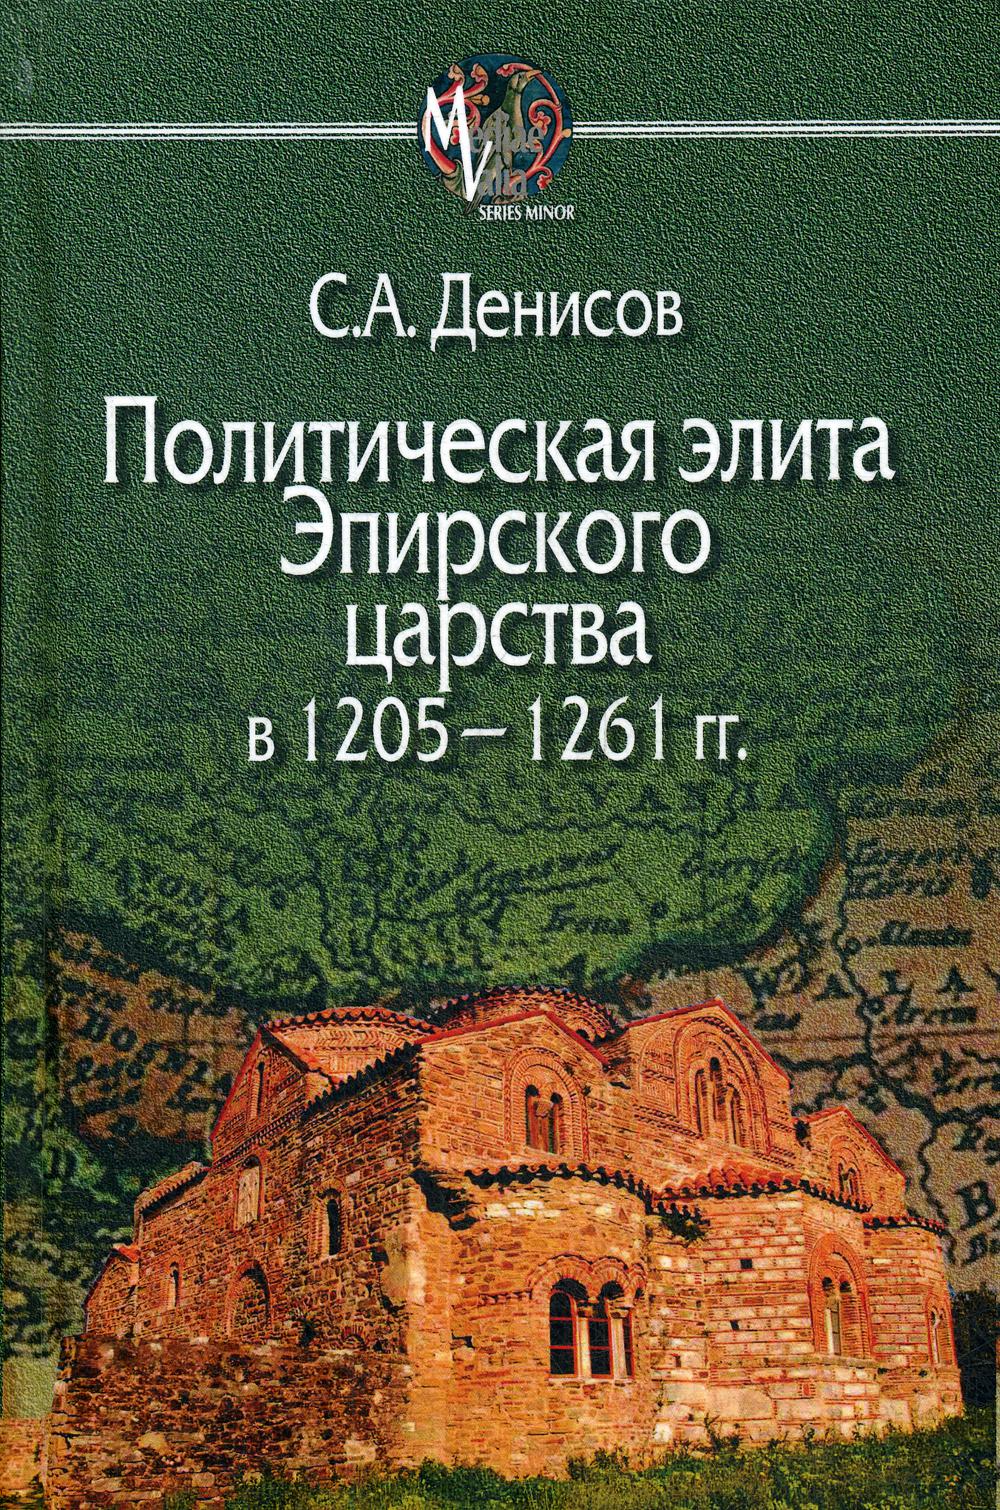 фото Книга политическая элита эпирского царства в 1205—1261 гг центр гуманитарных инициатив